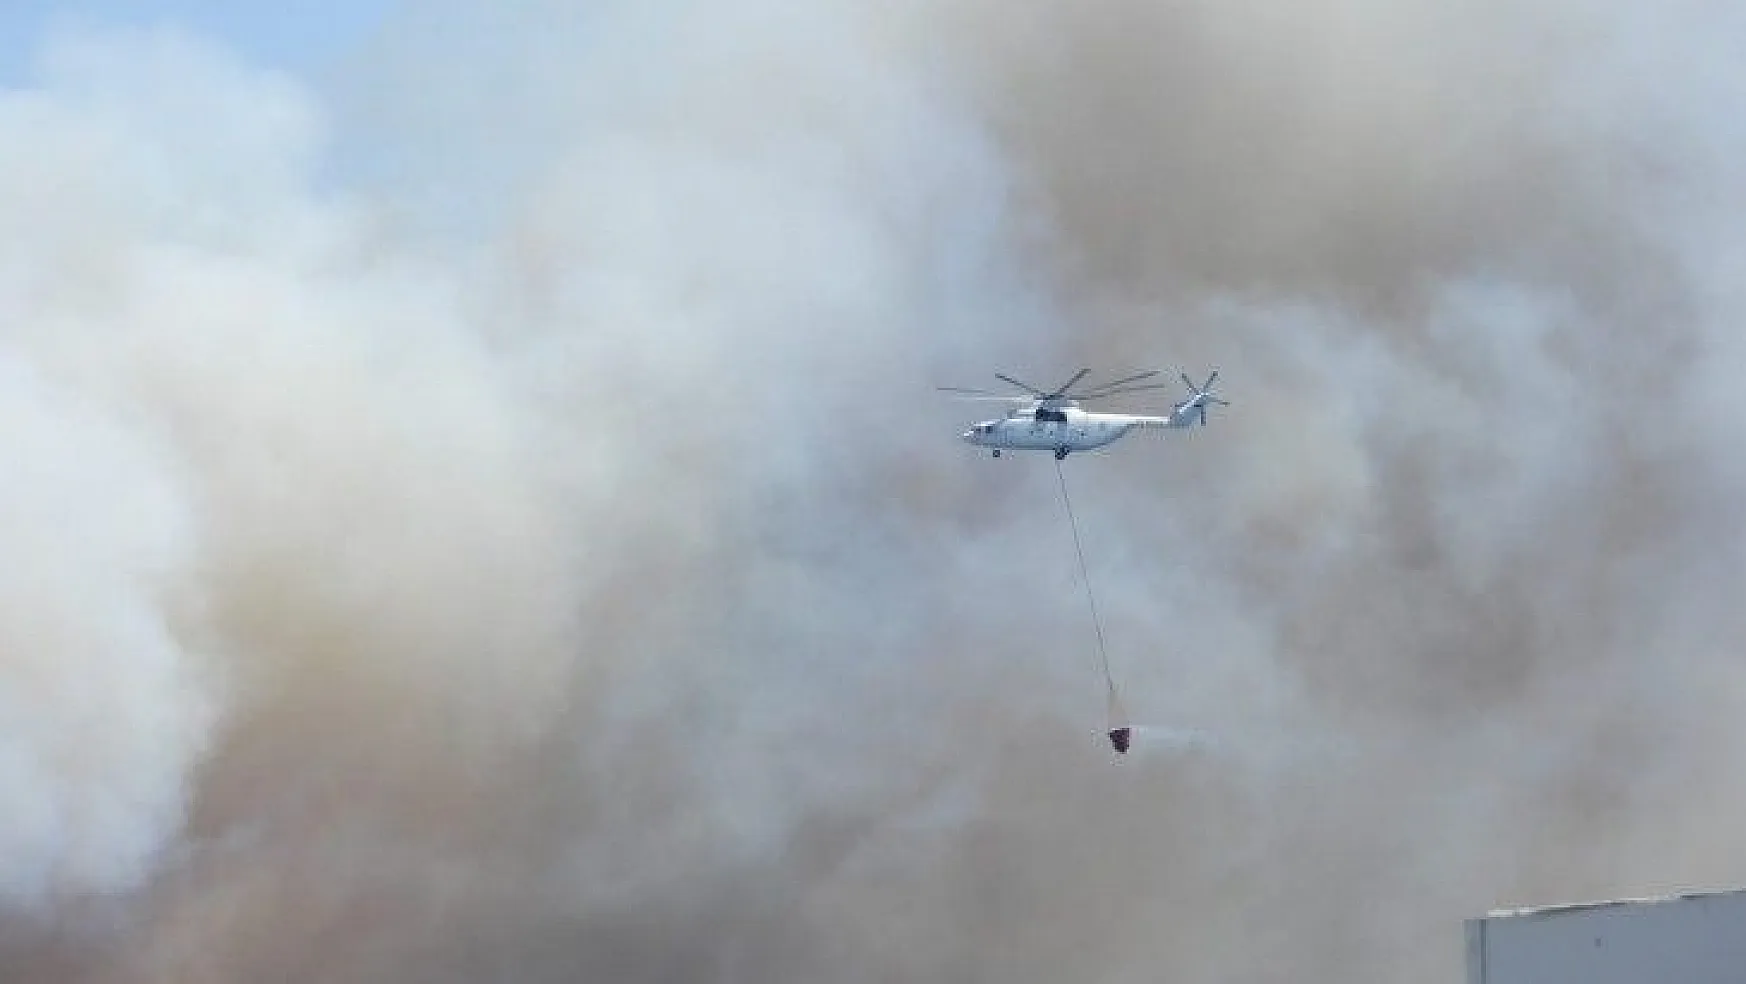 Bodrum'da yangınlar büyüyor, bazı ev ve oteller tahliye ediliyor